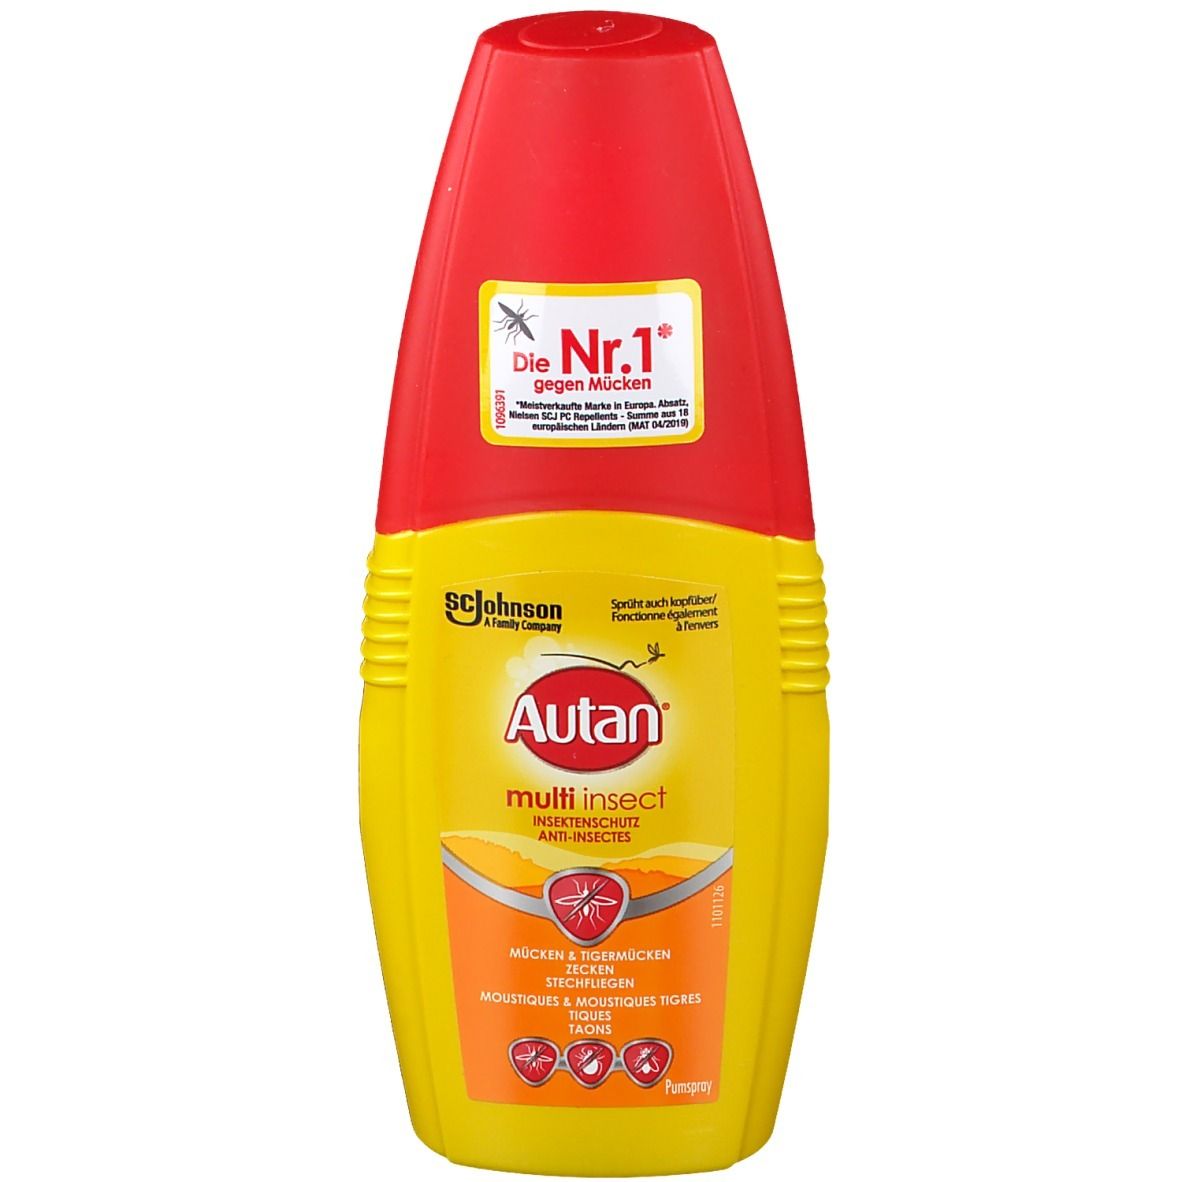 Autan® Multi Insect Insektenschutzspray